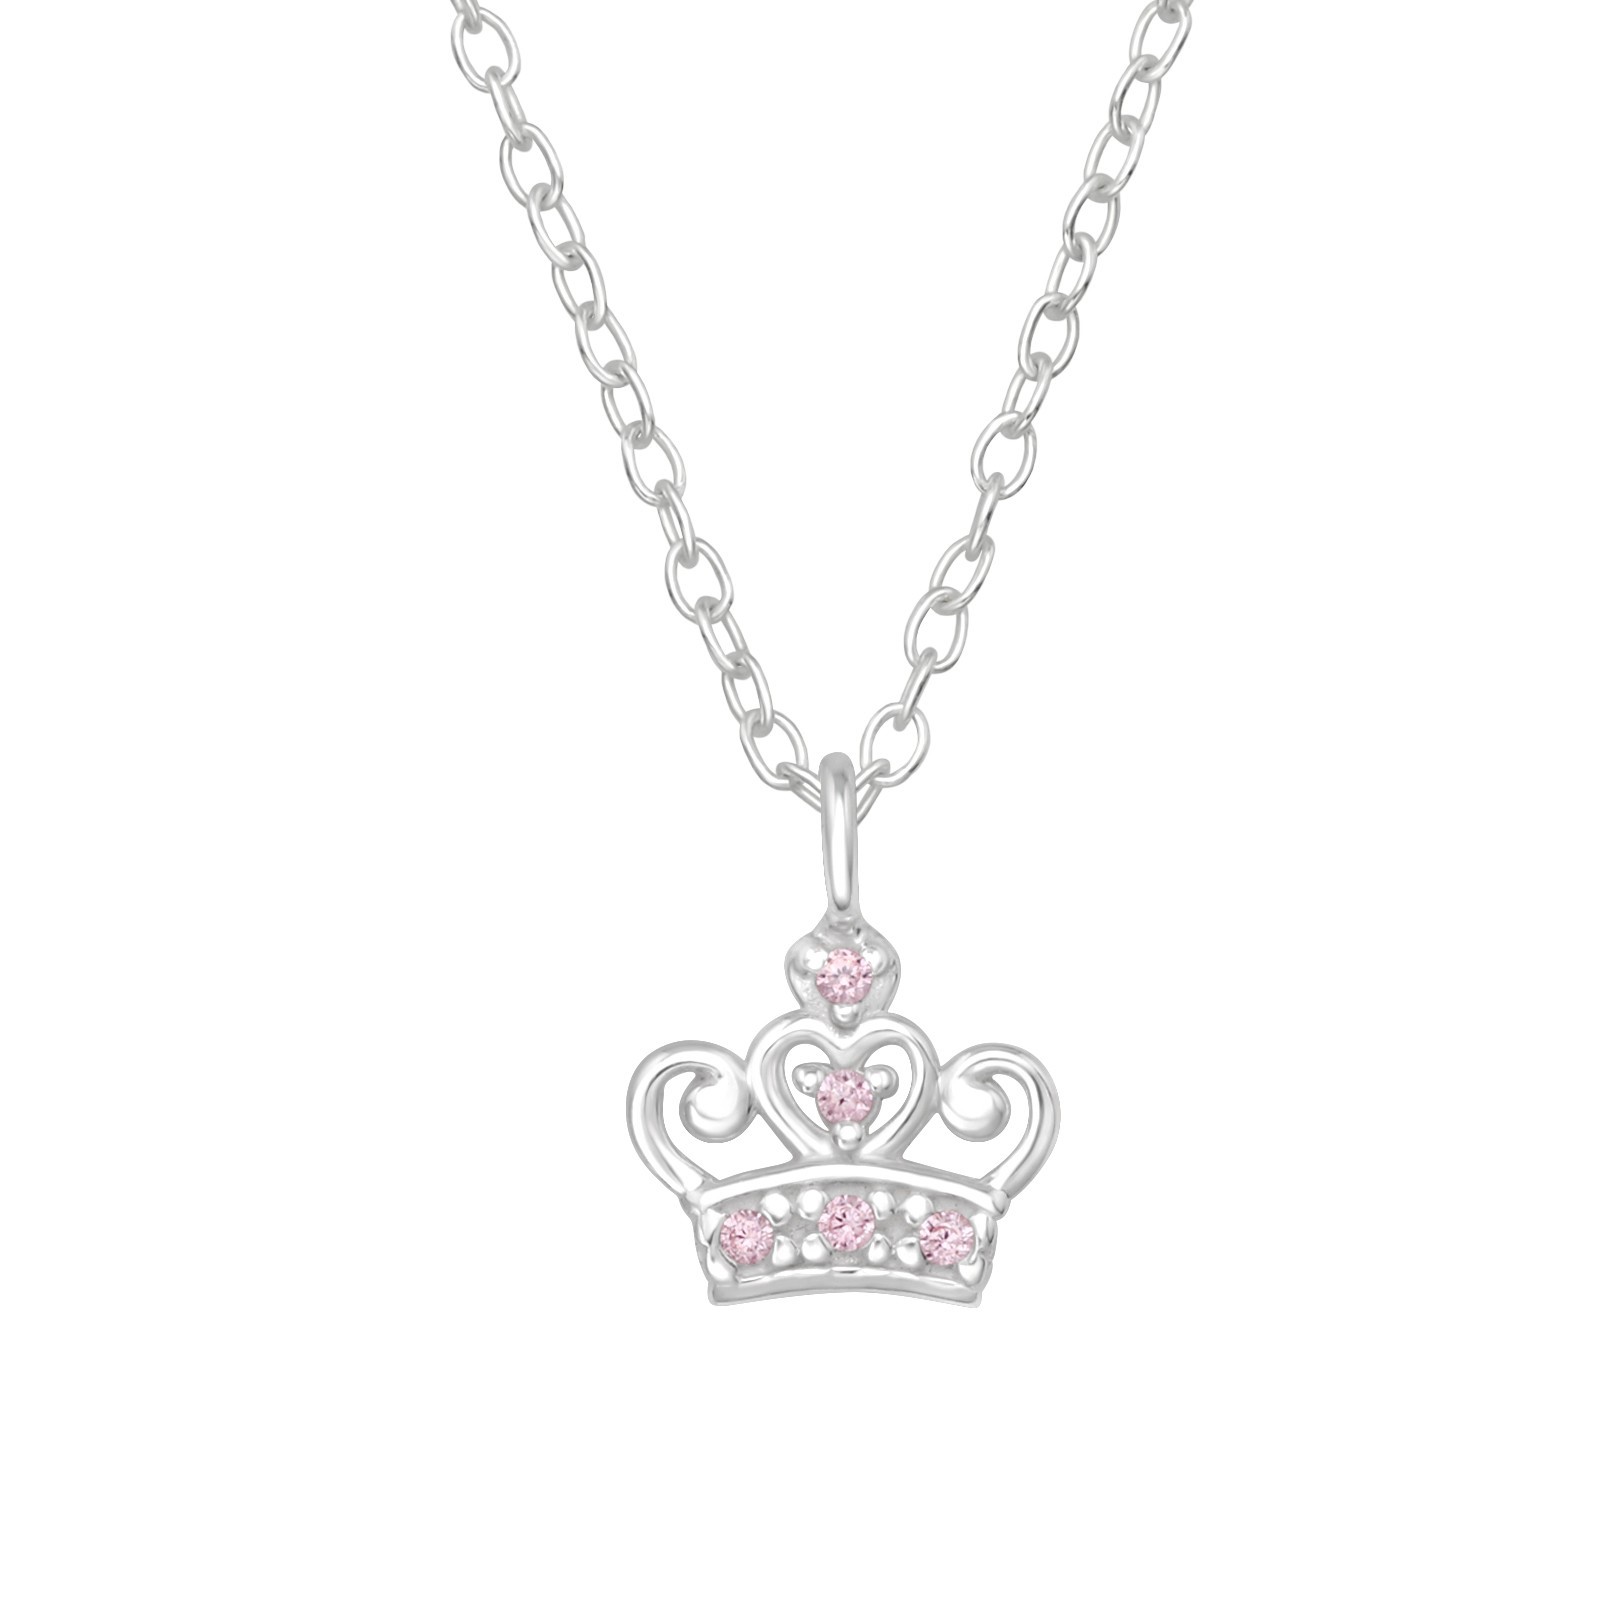 Barnhalsband Prinsesskrona rosa stenar - sött halsband till barn i äkta 925 sterling silver